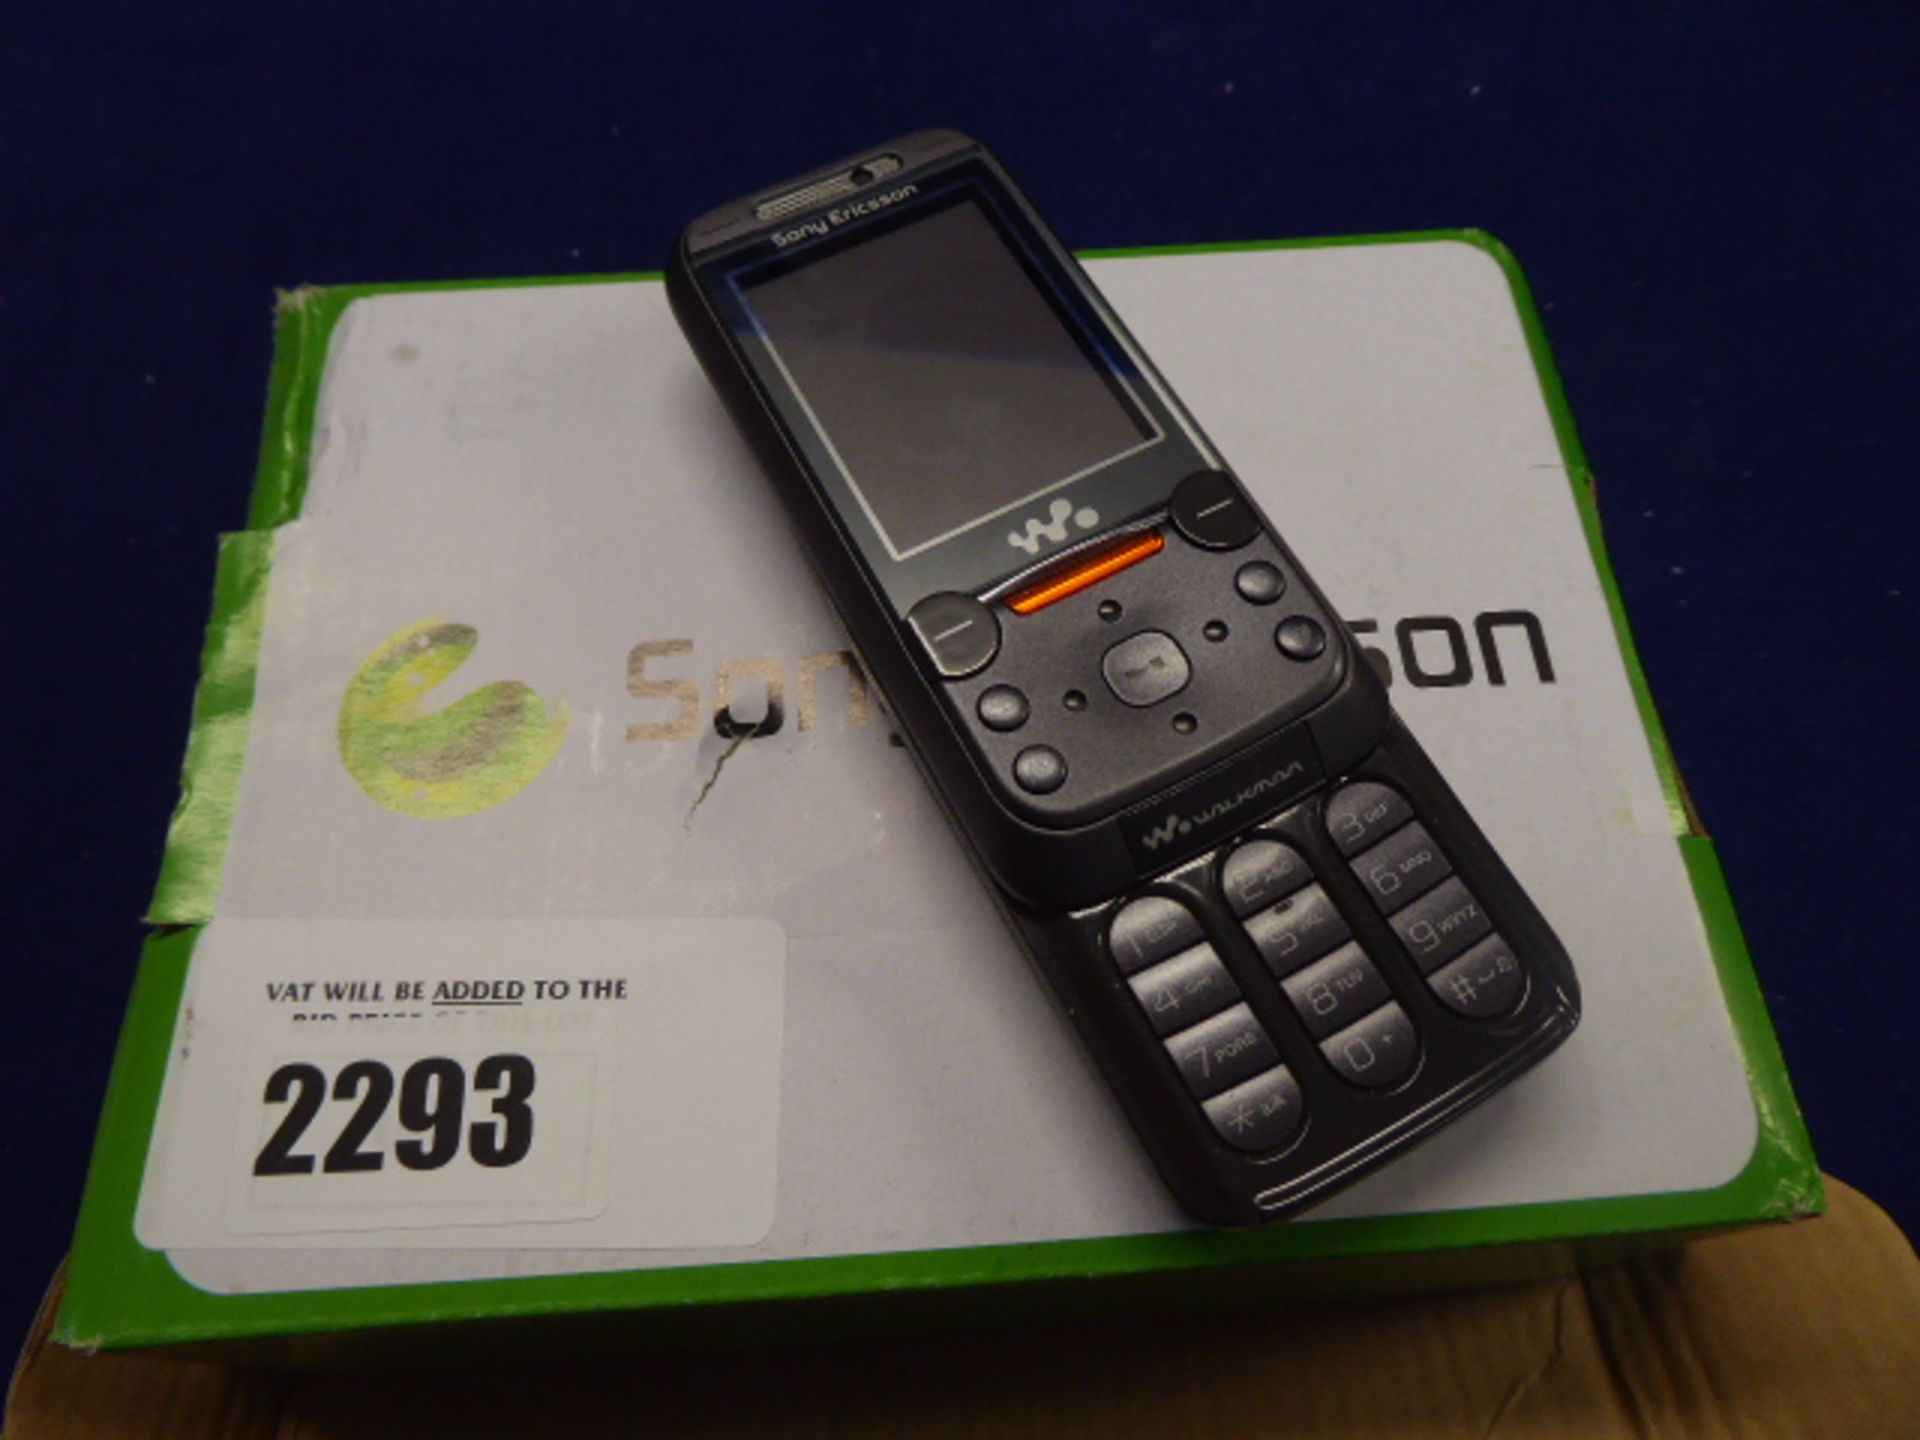 Sony Ericsson W850i mobile phone